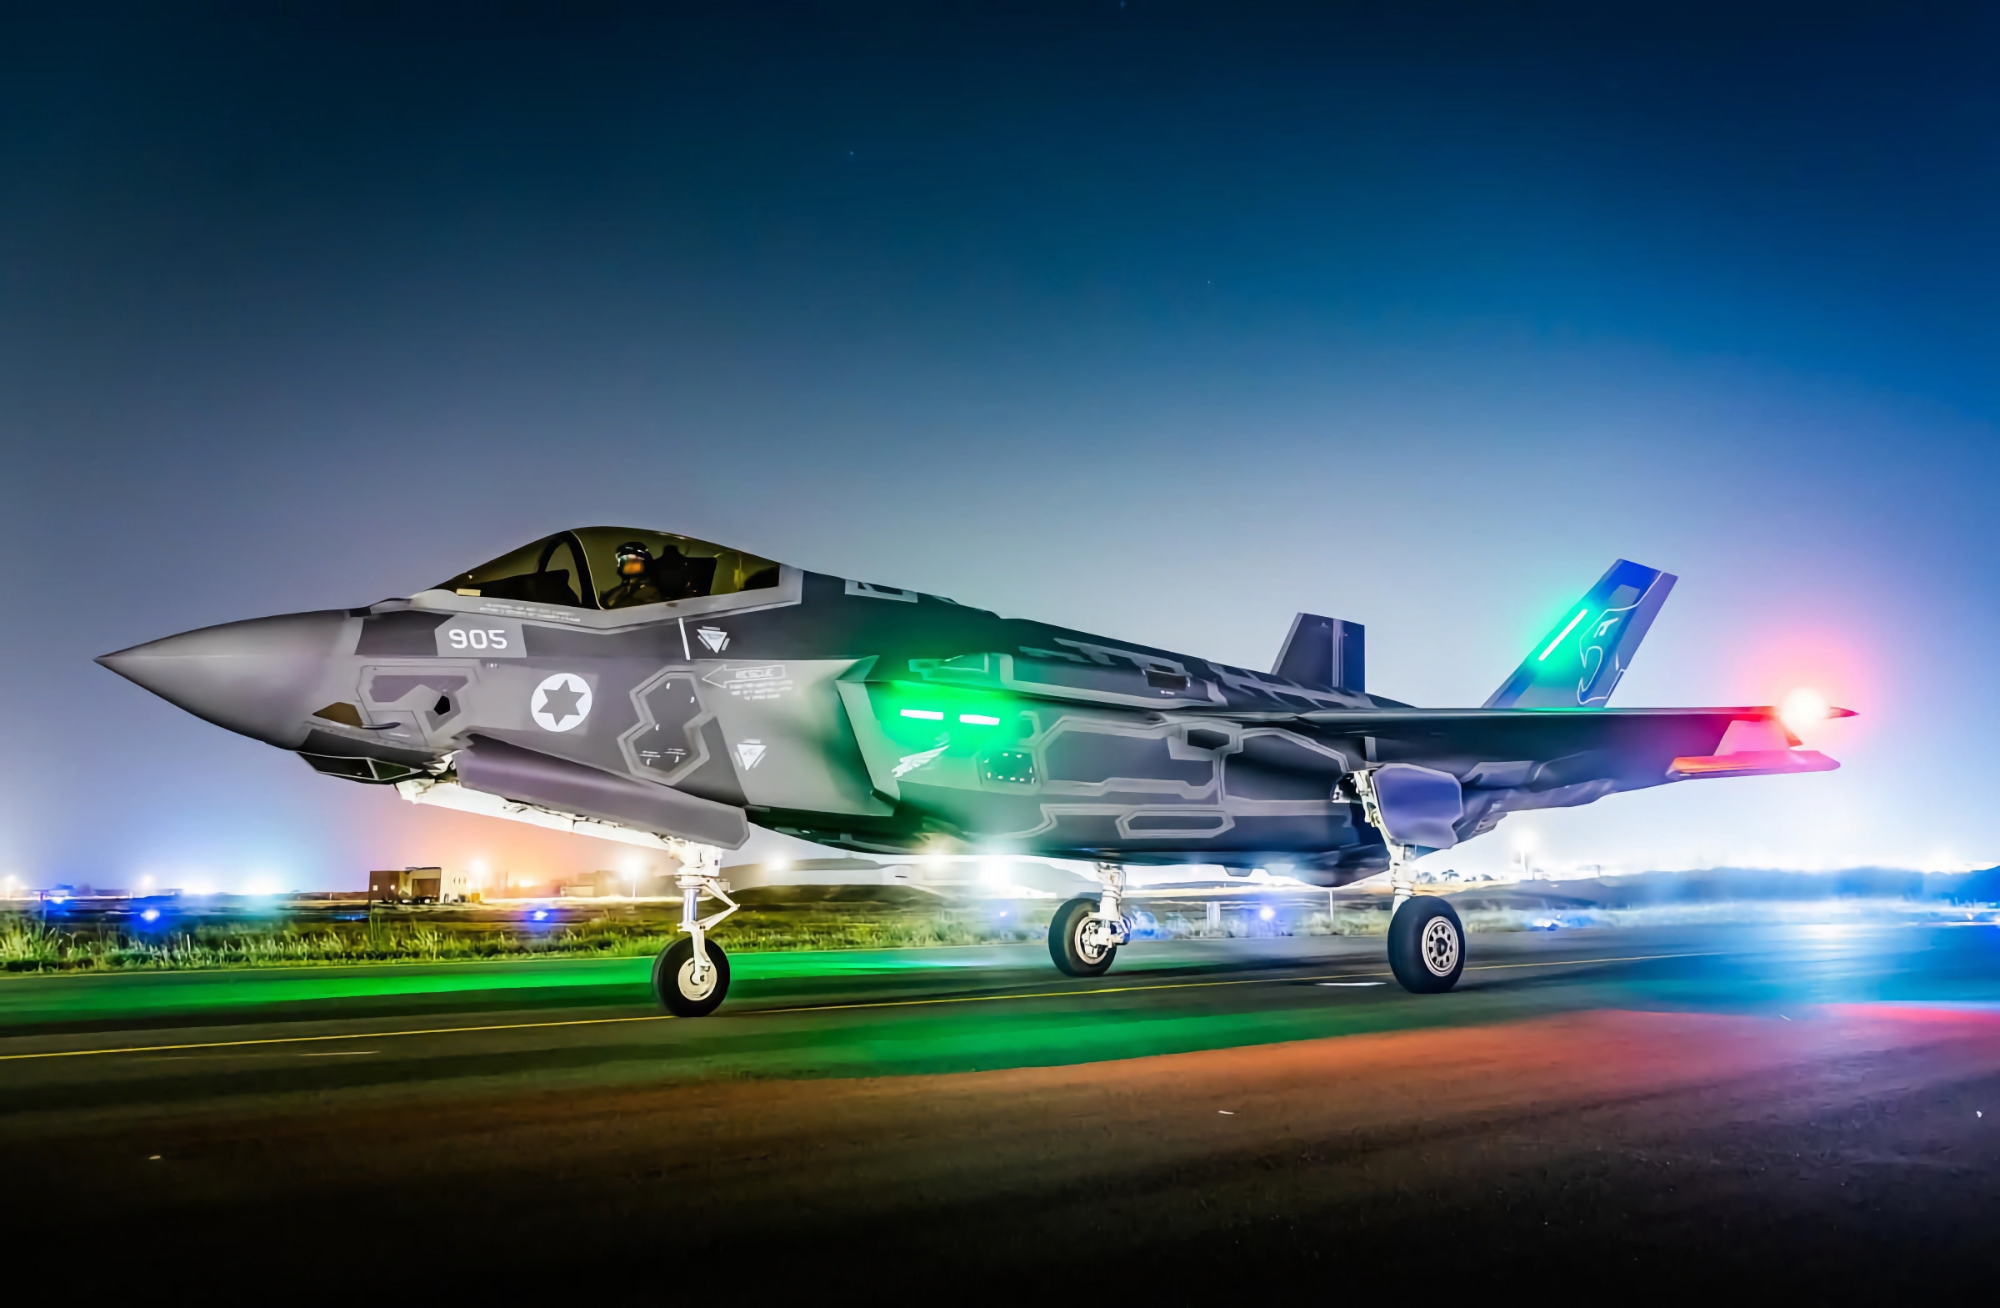 3.000.000.000.000.000 $ Vertrag: Israel kauft weitere F-35 Lightning II Kampfflugzeuge der fünften Generation von den USA 